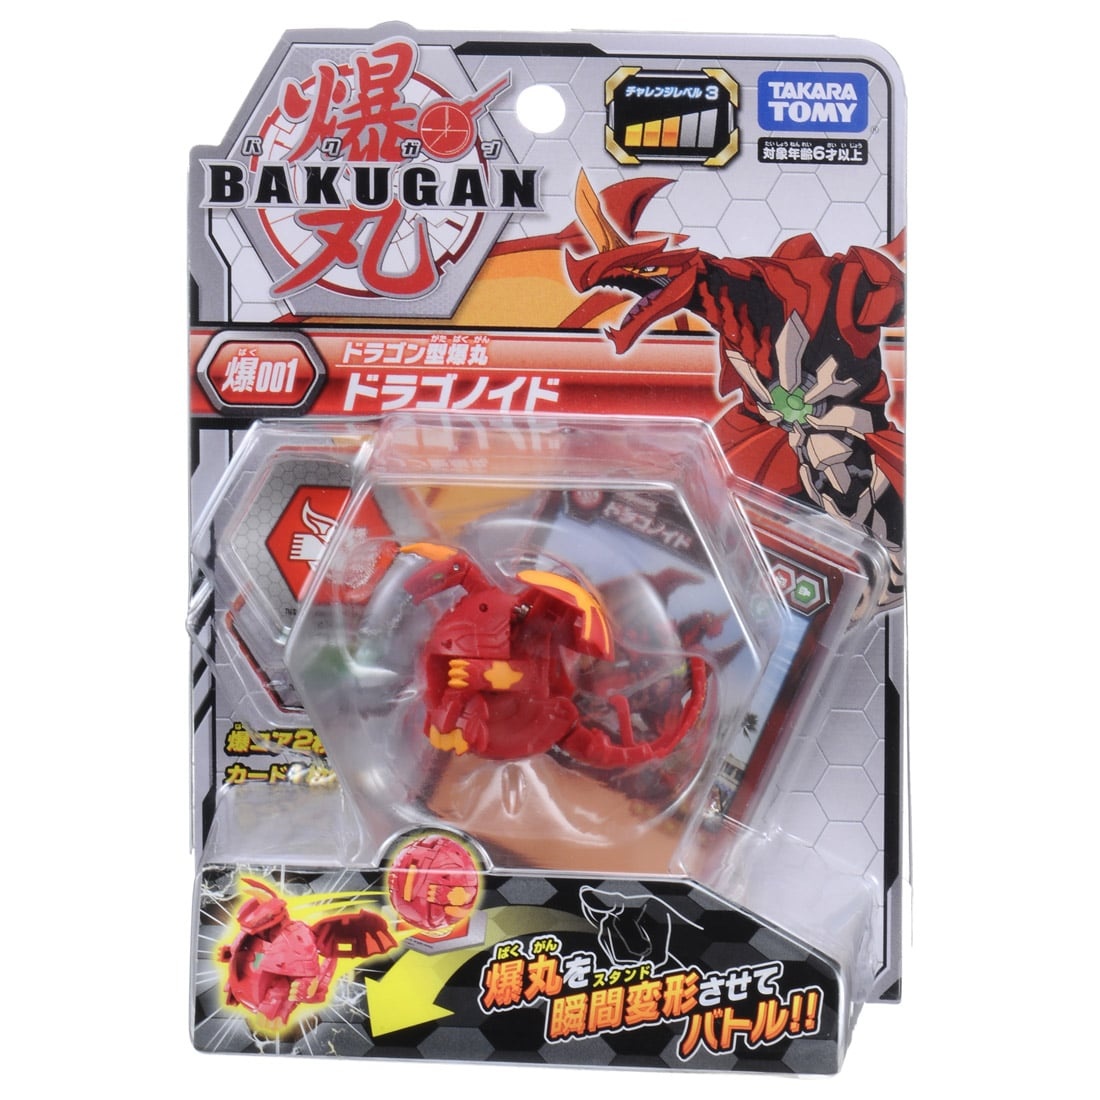 Battle Planet Baku001 Bakugan Dragonoid Drago Red Toy Japan Takara Tomy Bakugan 